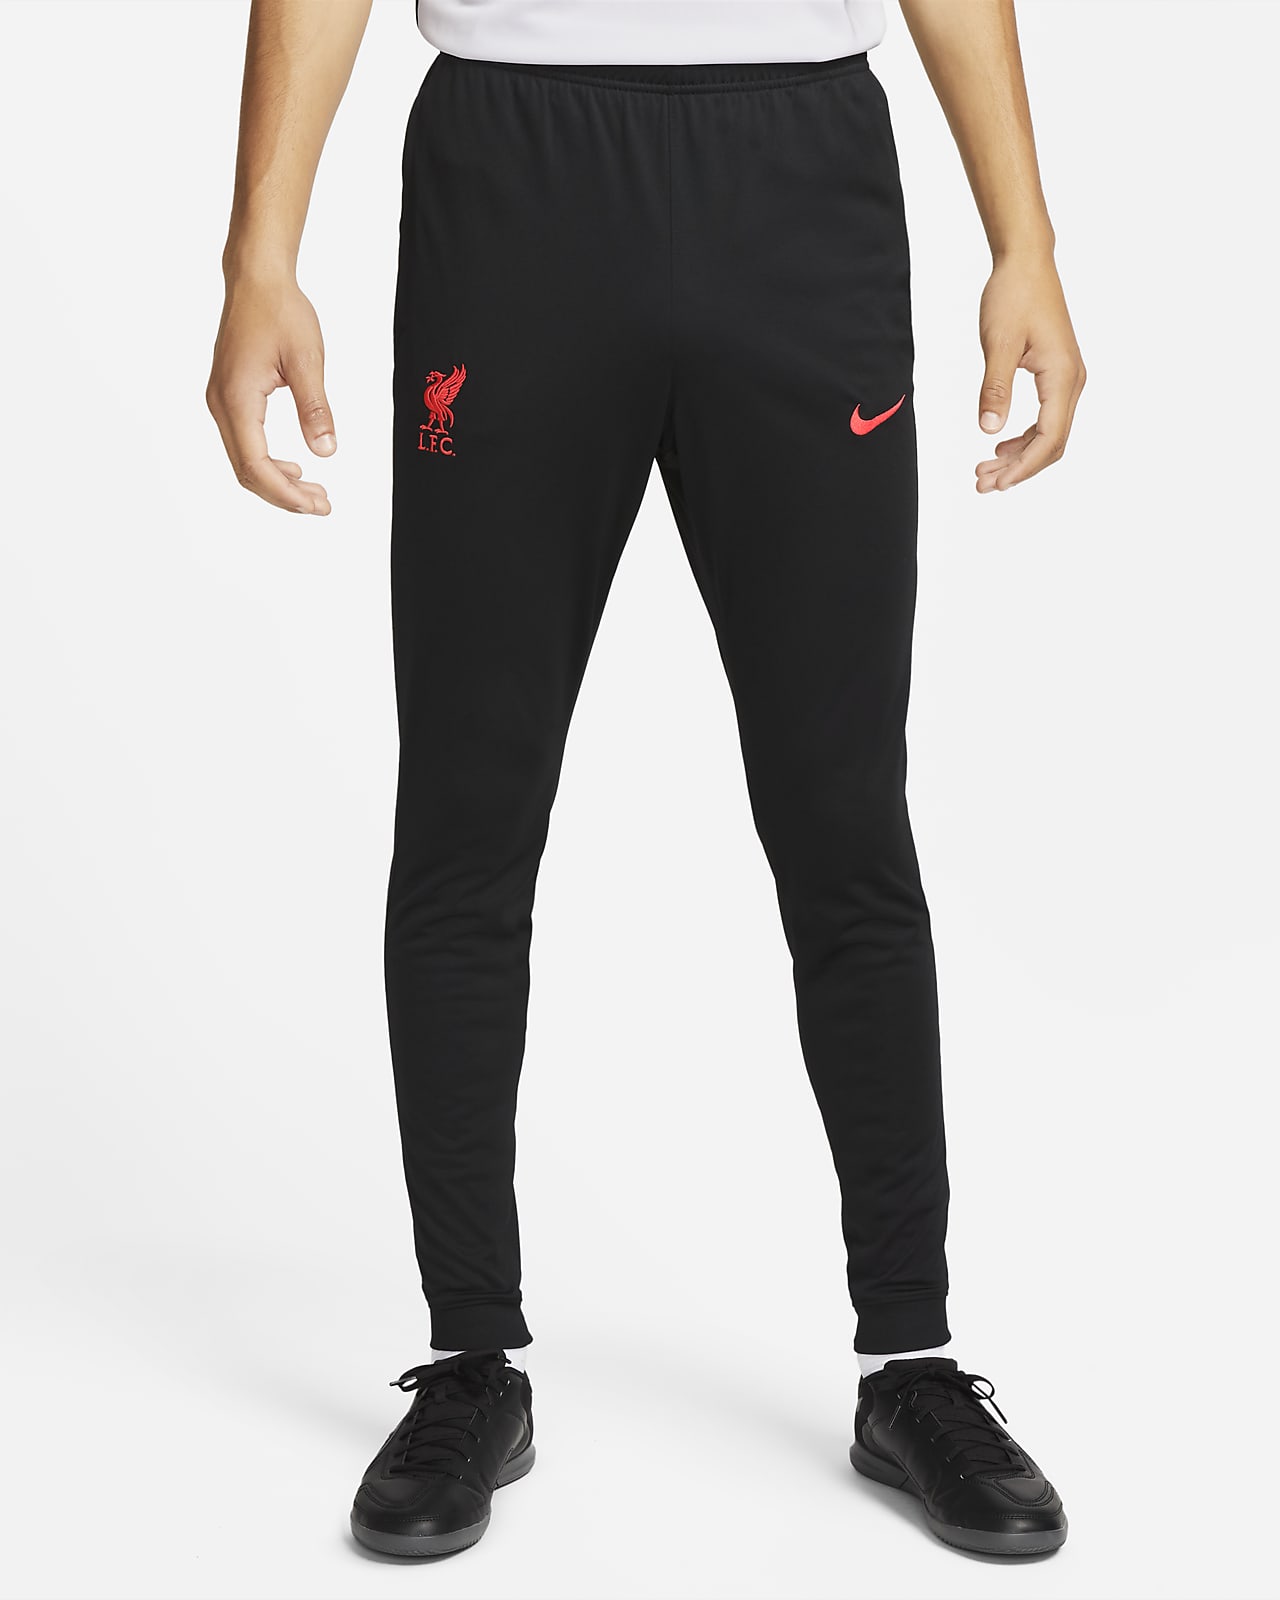 Ανδρικό πλεκτό ποδοσφαιρικό παντελόνι φόρμας Nike Dri-FIT εκτός έδρας Λίβερπουλ Strike